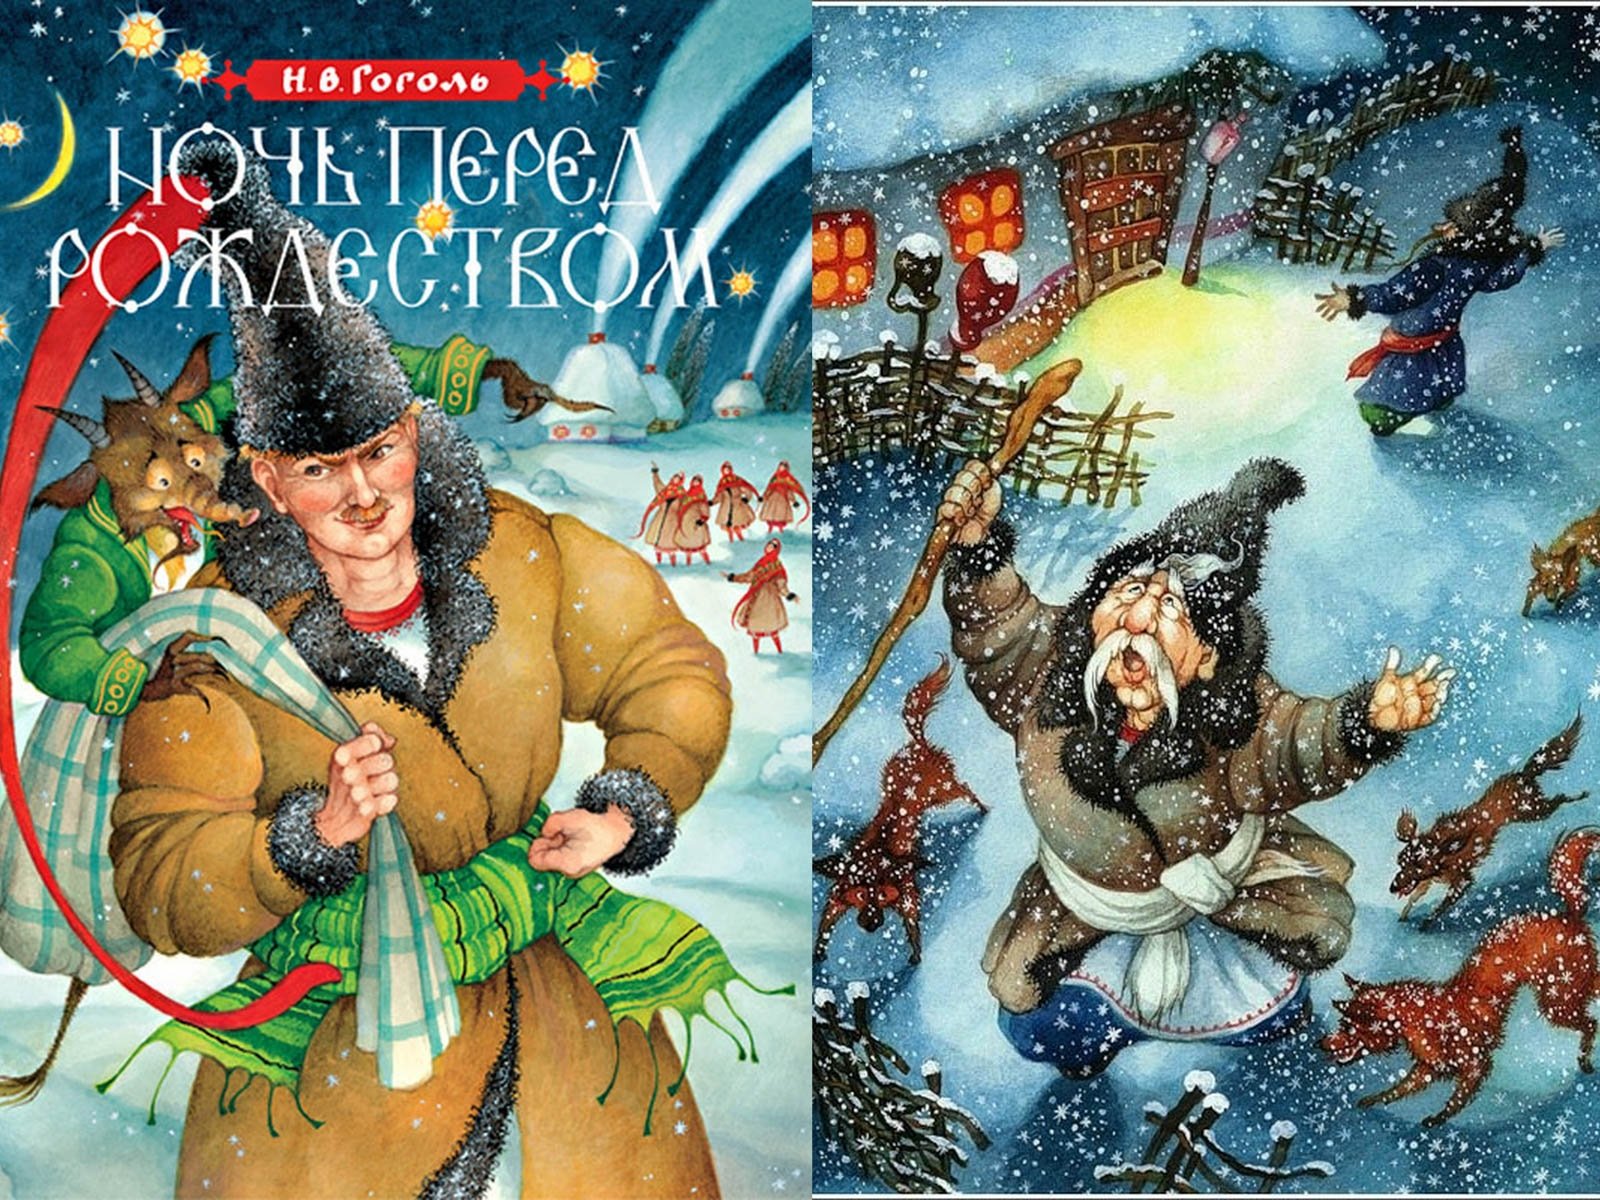 Васильевич гоголь ночь перед рождеством. Н В Гоголь ночь перед Рождеством. Иллюстрации к книге Гоголя ночь перед Рождеством. Иллюстрацию к произведению н.в.Гоголя "ночь перед Рождеством".